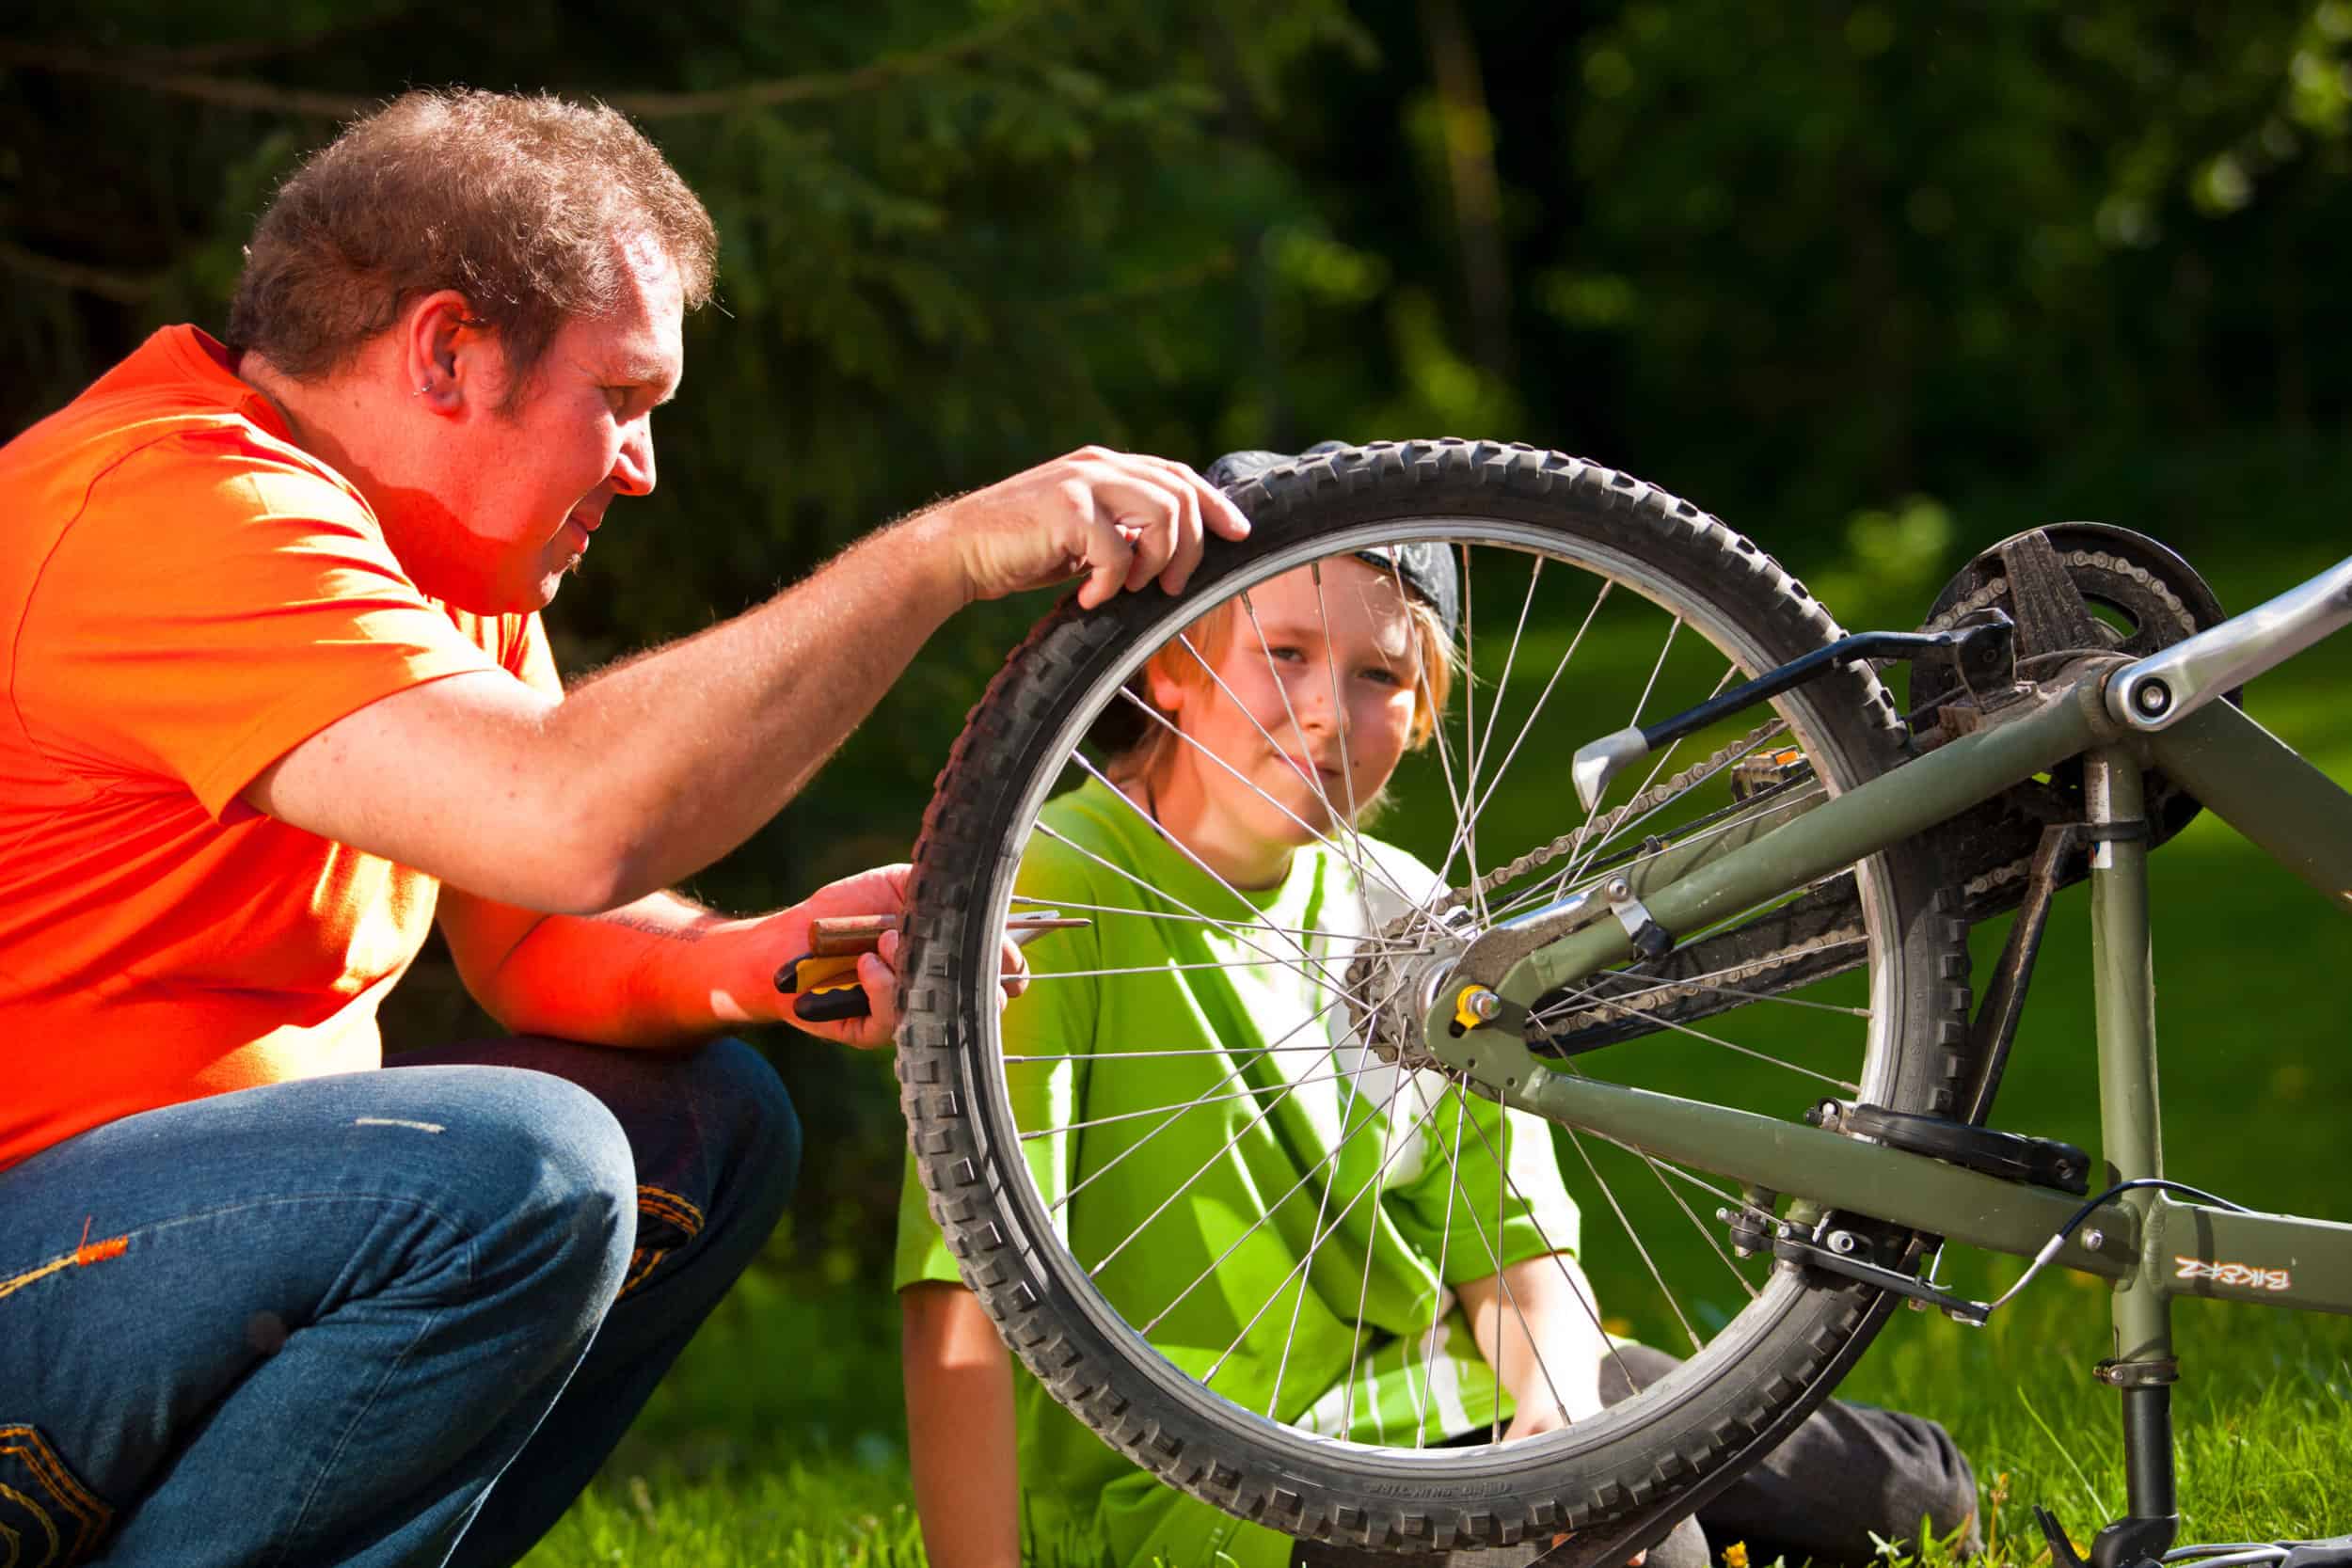 Mies ja poika korjaavat pyörää